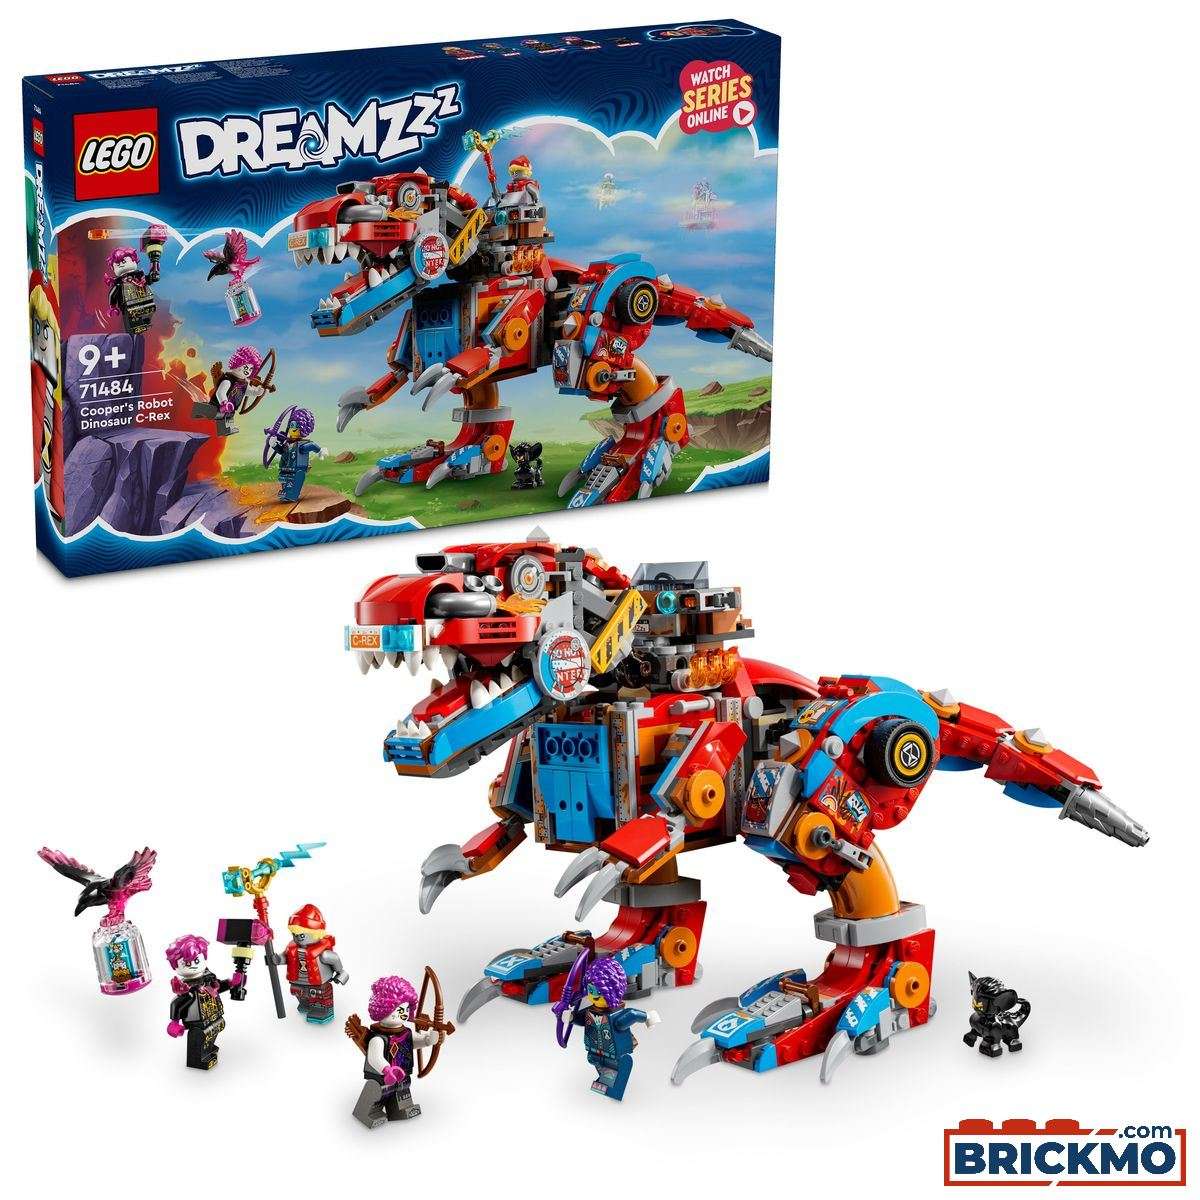 LEGO DreamZzz 71484 Robô Dinossauro C-Rex do Cooper 71484